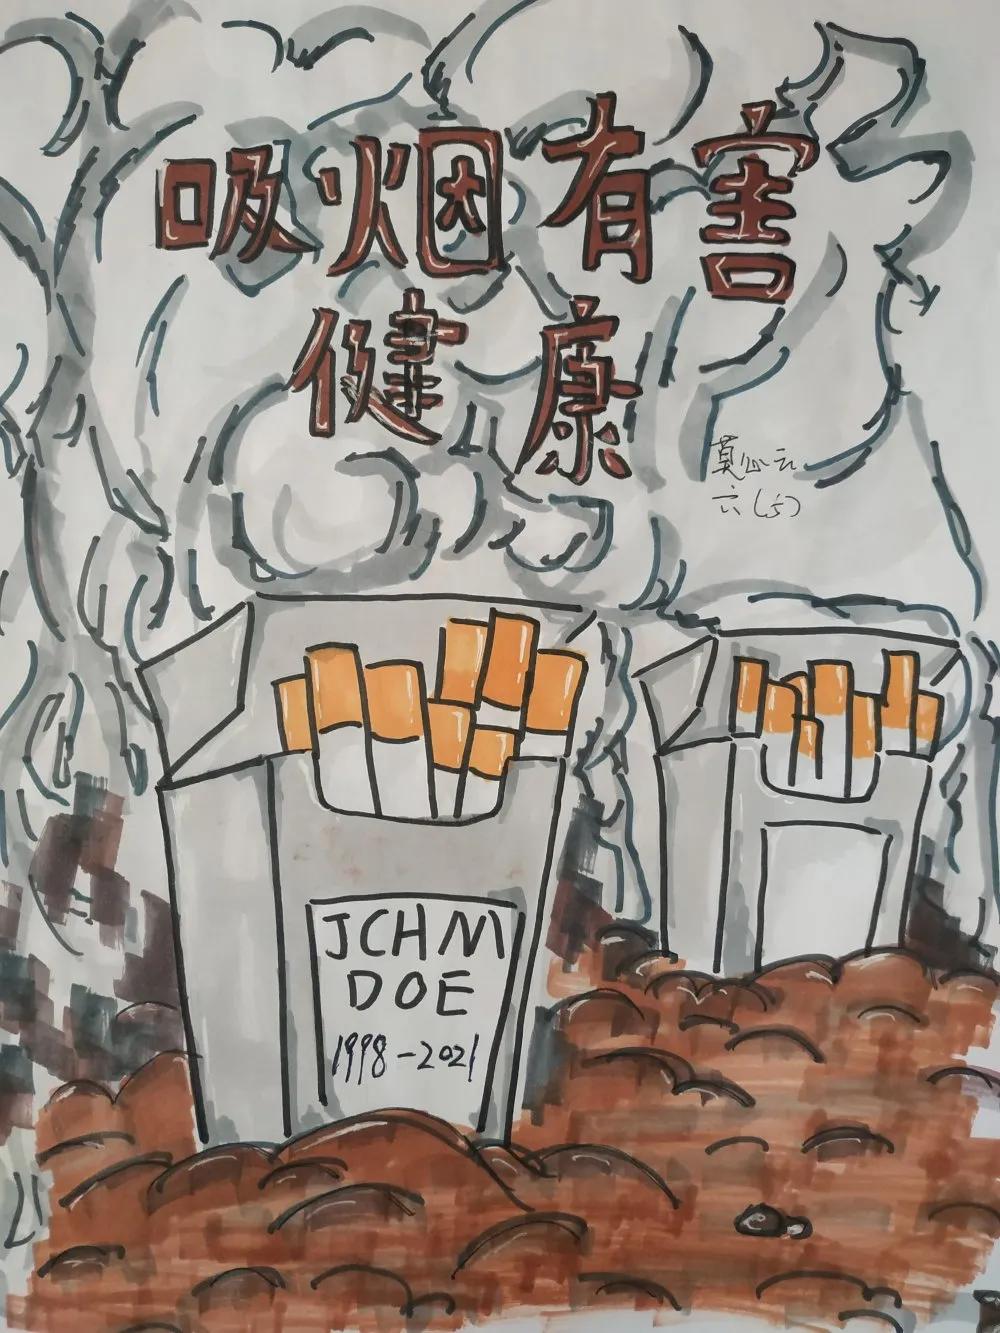 打造无烟校园 倡导健康生活——桂林市平山小学开展"无烟校园"系列